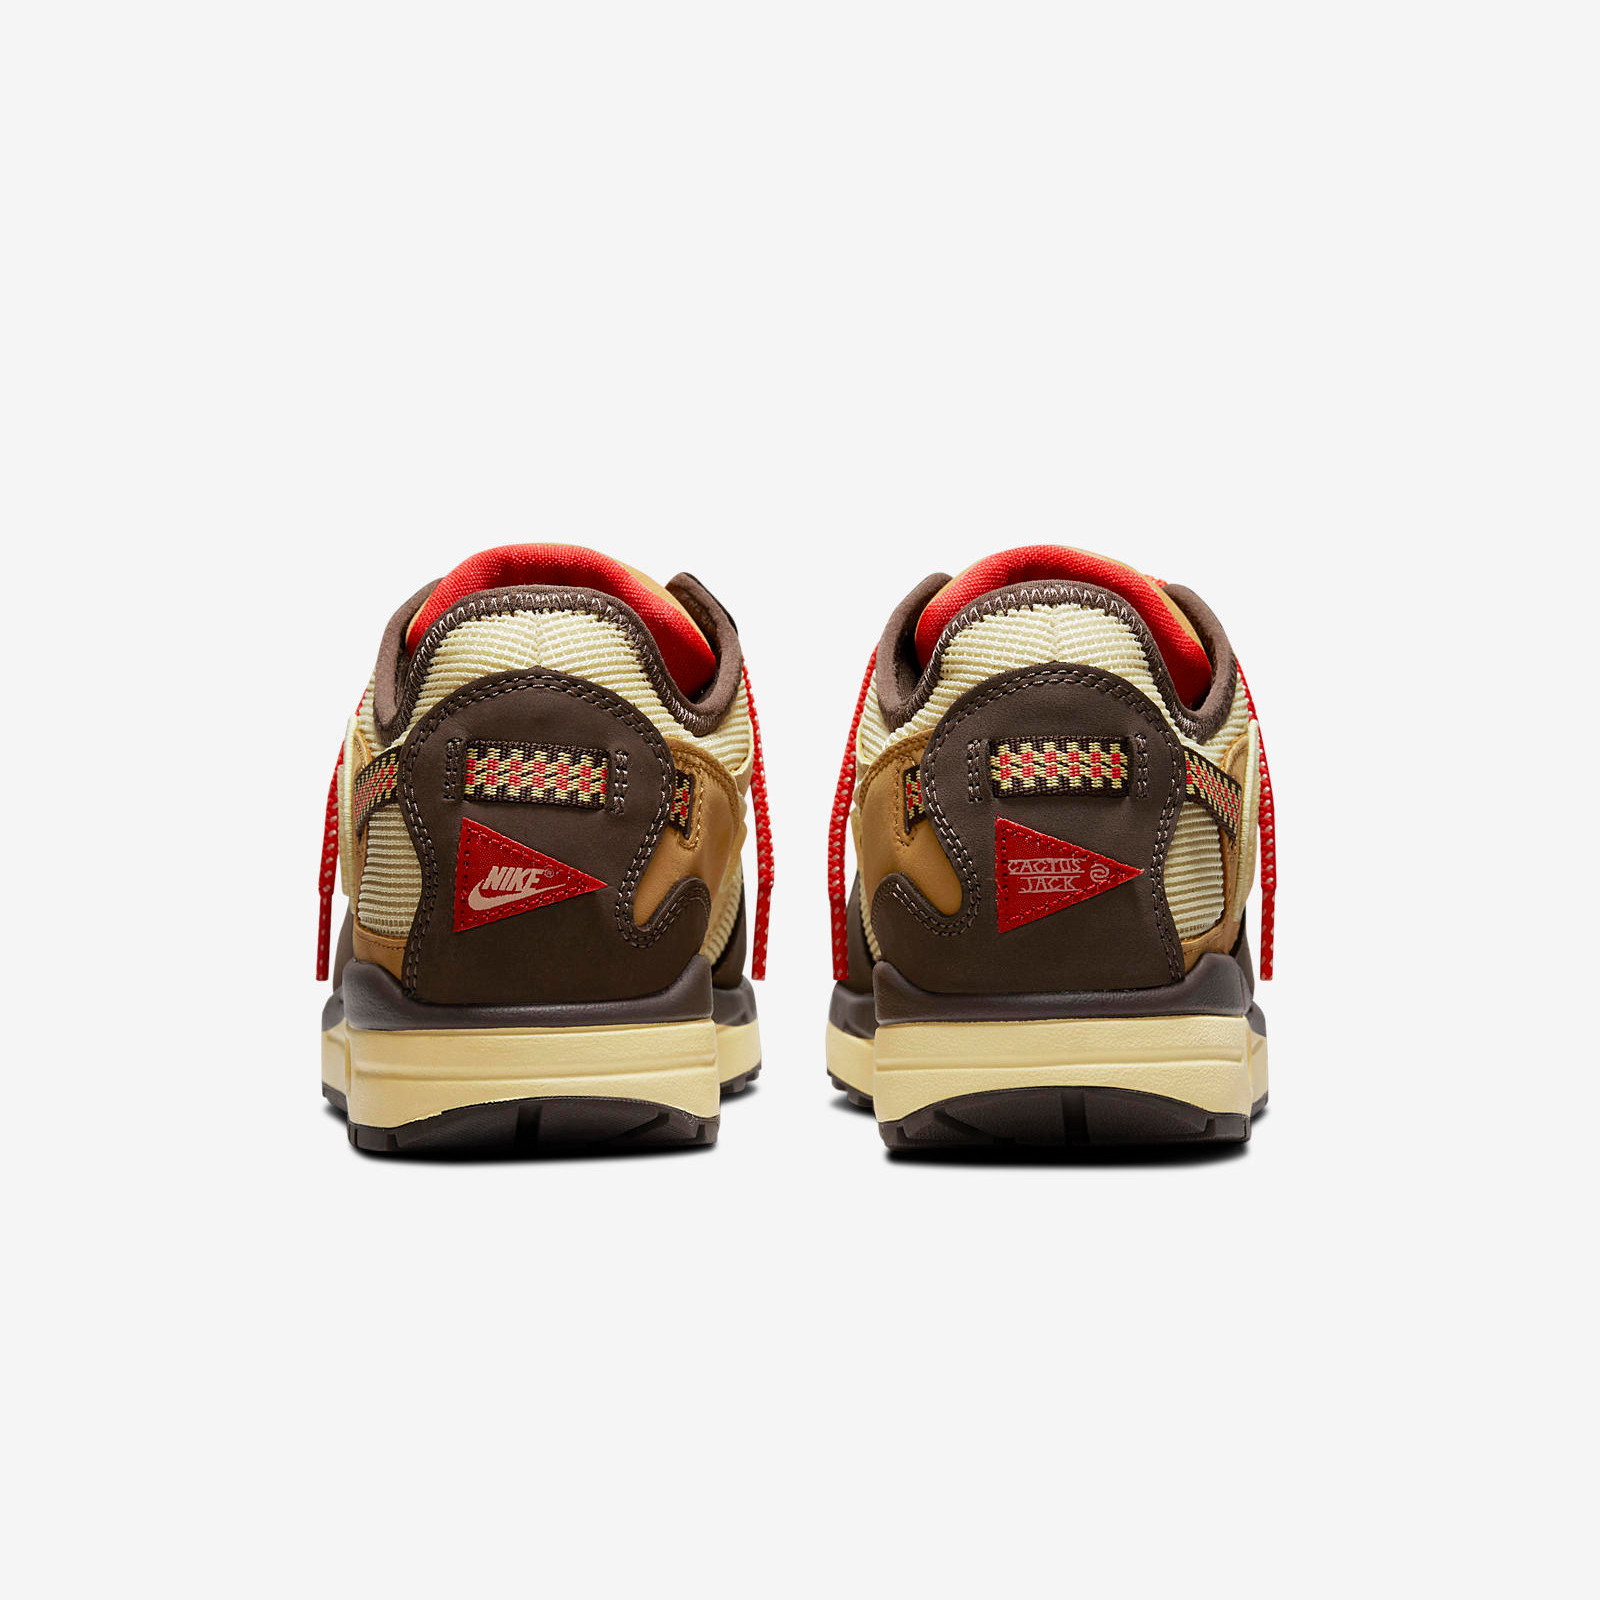 Nike x CACT.US CORP
Air Max 1
« Brown »